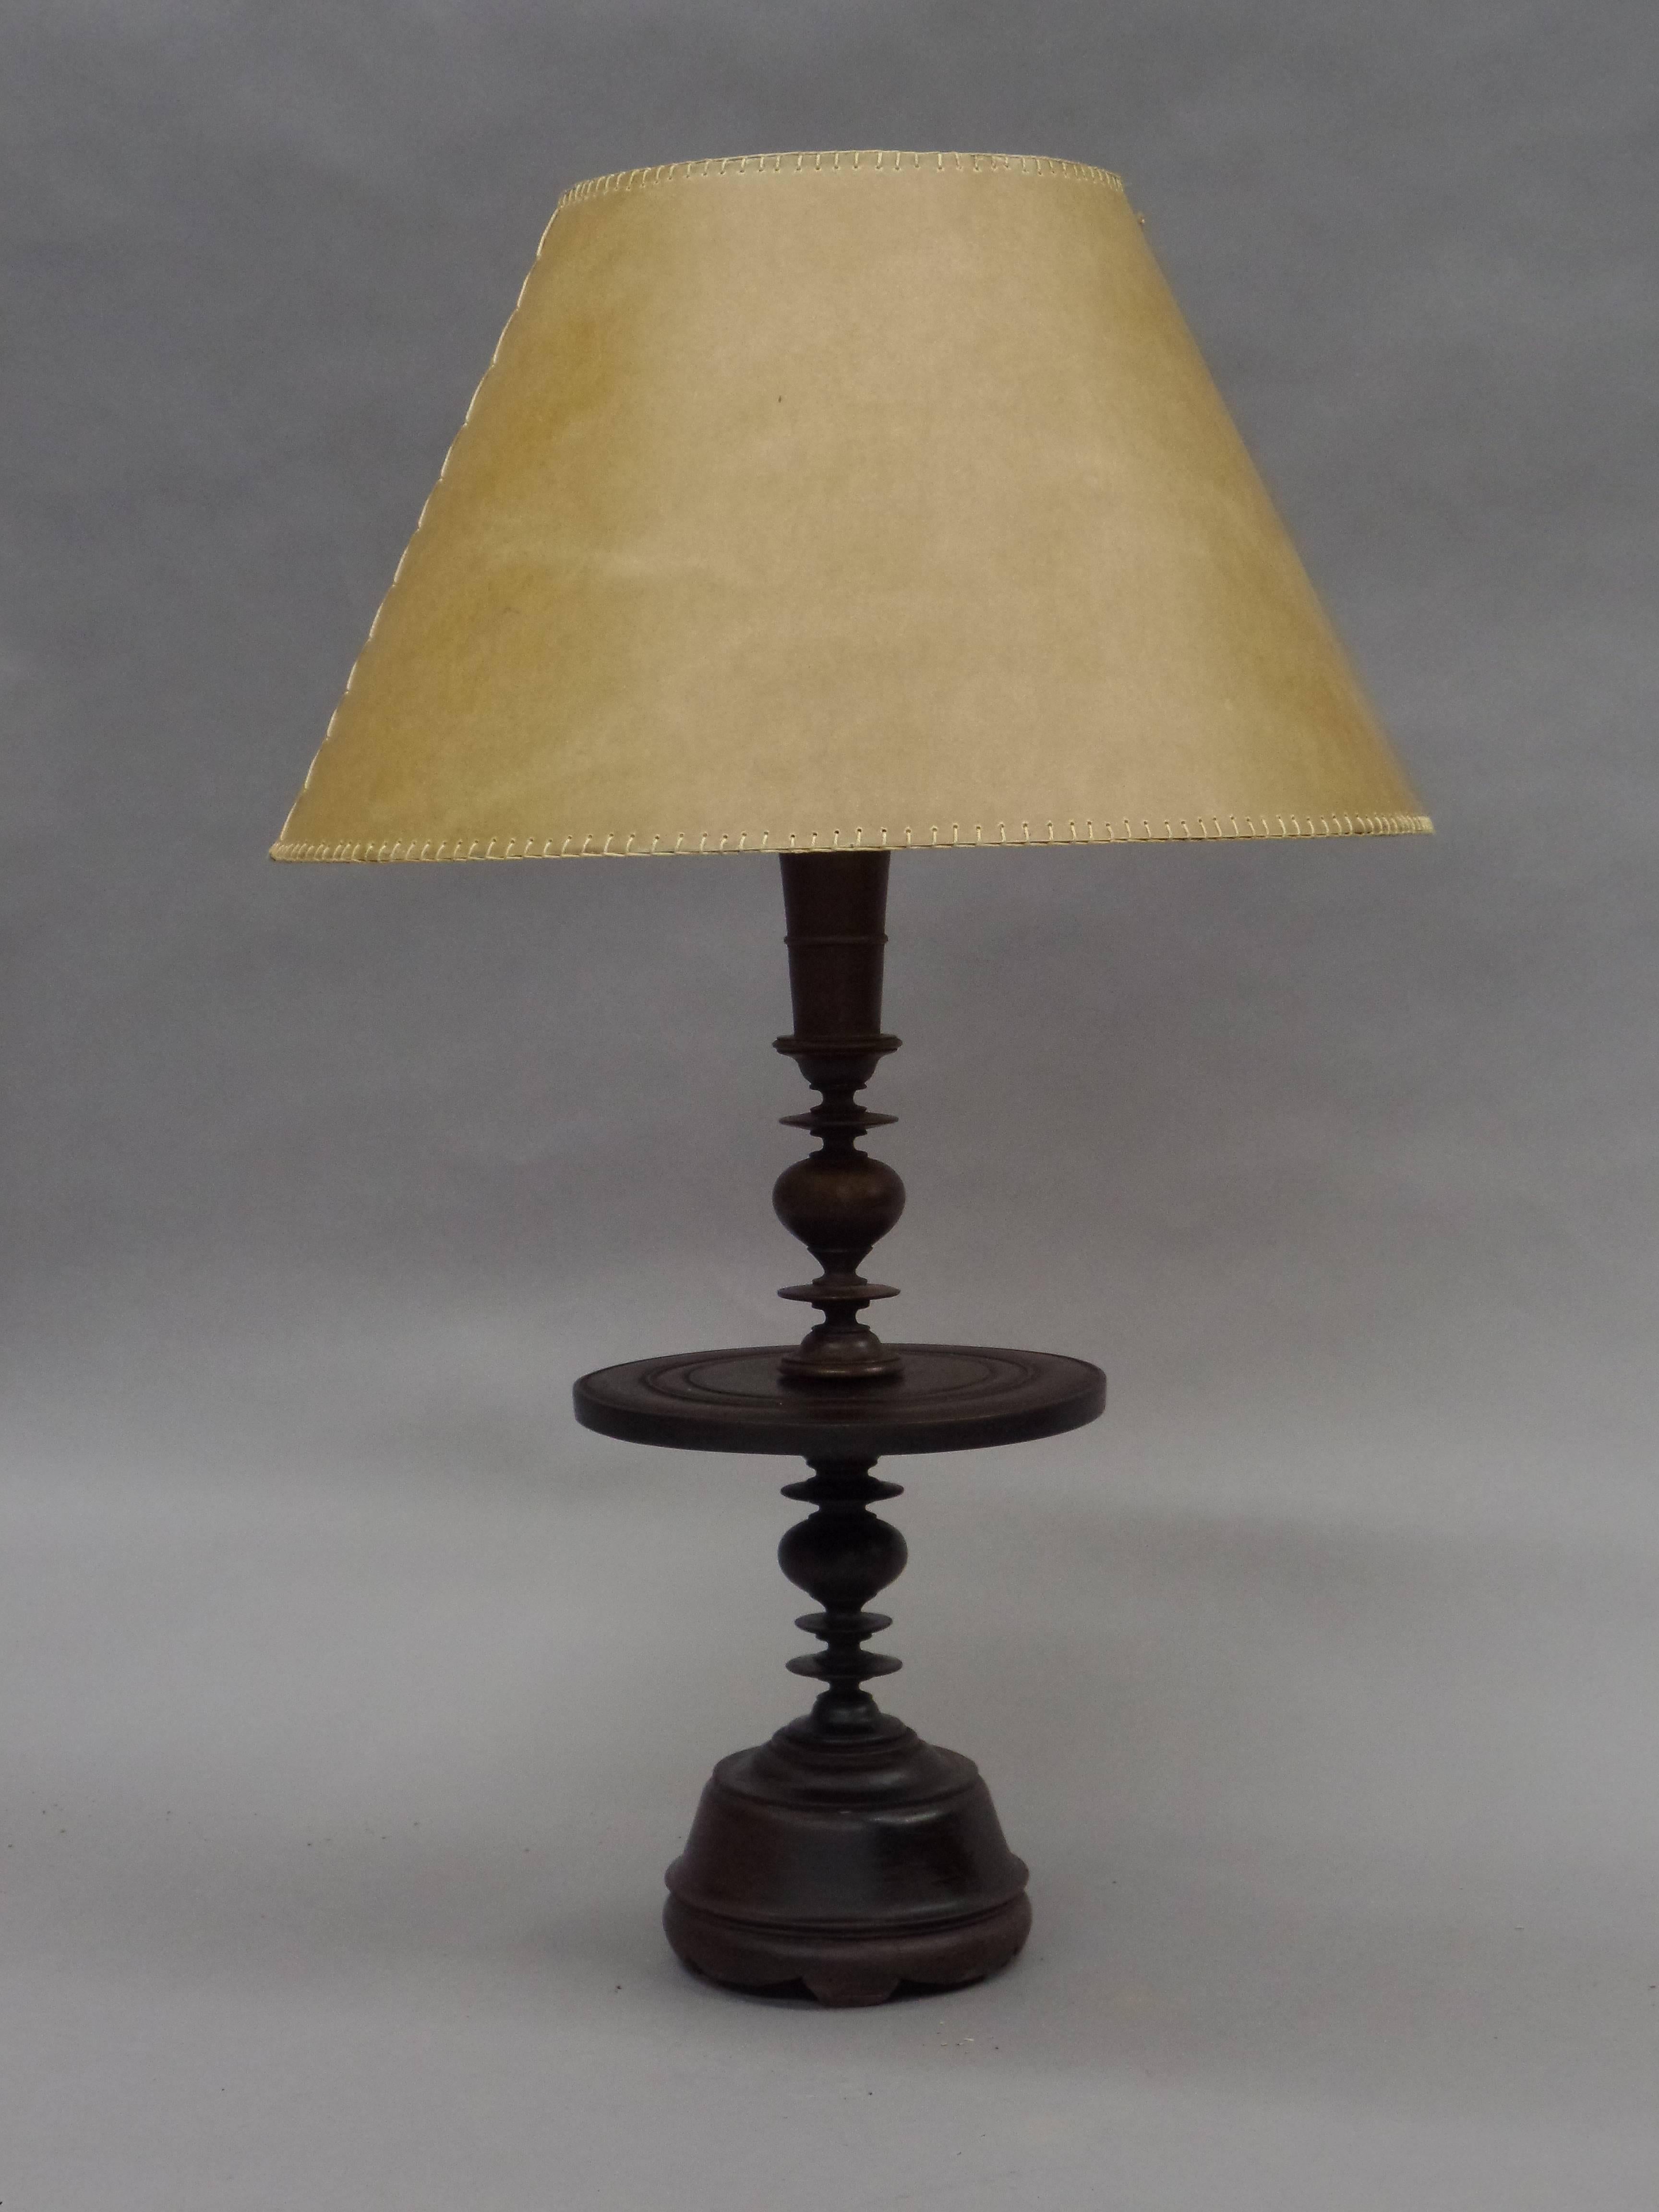 Une paire rare et élégante de bases de lampe de table ou de candélabres en bois de teck sculpté et tourné de style colonial français. 

Les lampes sont vendues comme des bases en bois avec une hauteur de 19,5 x D 8